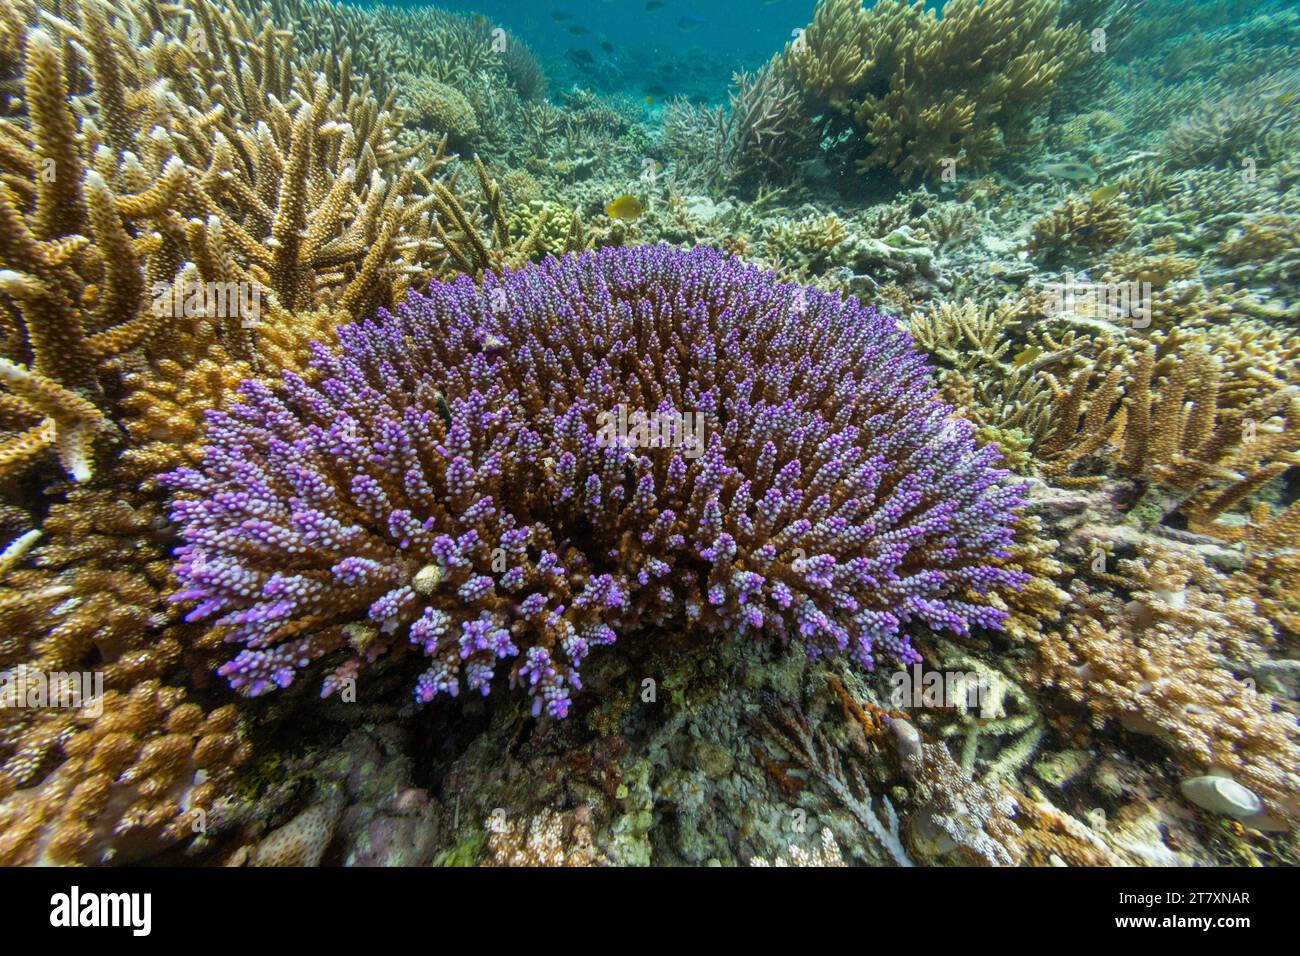 Abbondante vita nelle acque cristalline delle barriere coralline poco profonde al largo di Sandy Beach, Manta Point, Raja Ampat, Indonesia, Sud-est asiatico, Asia Foto Stock